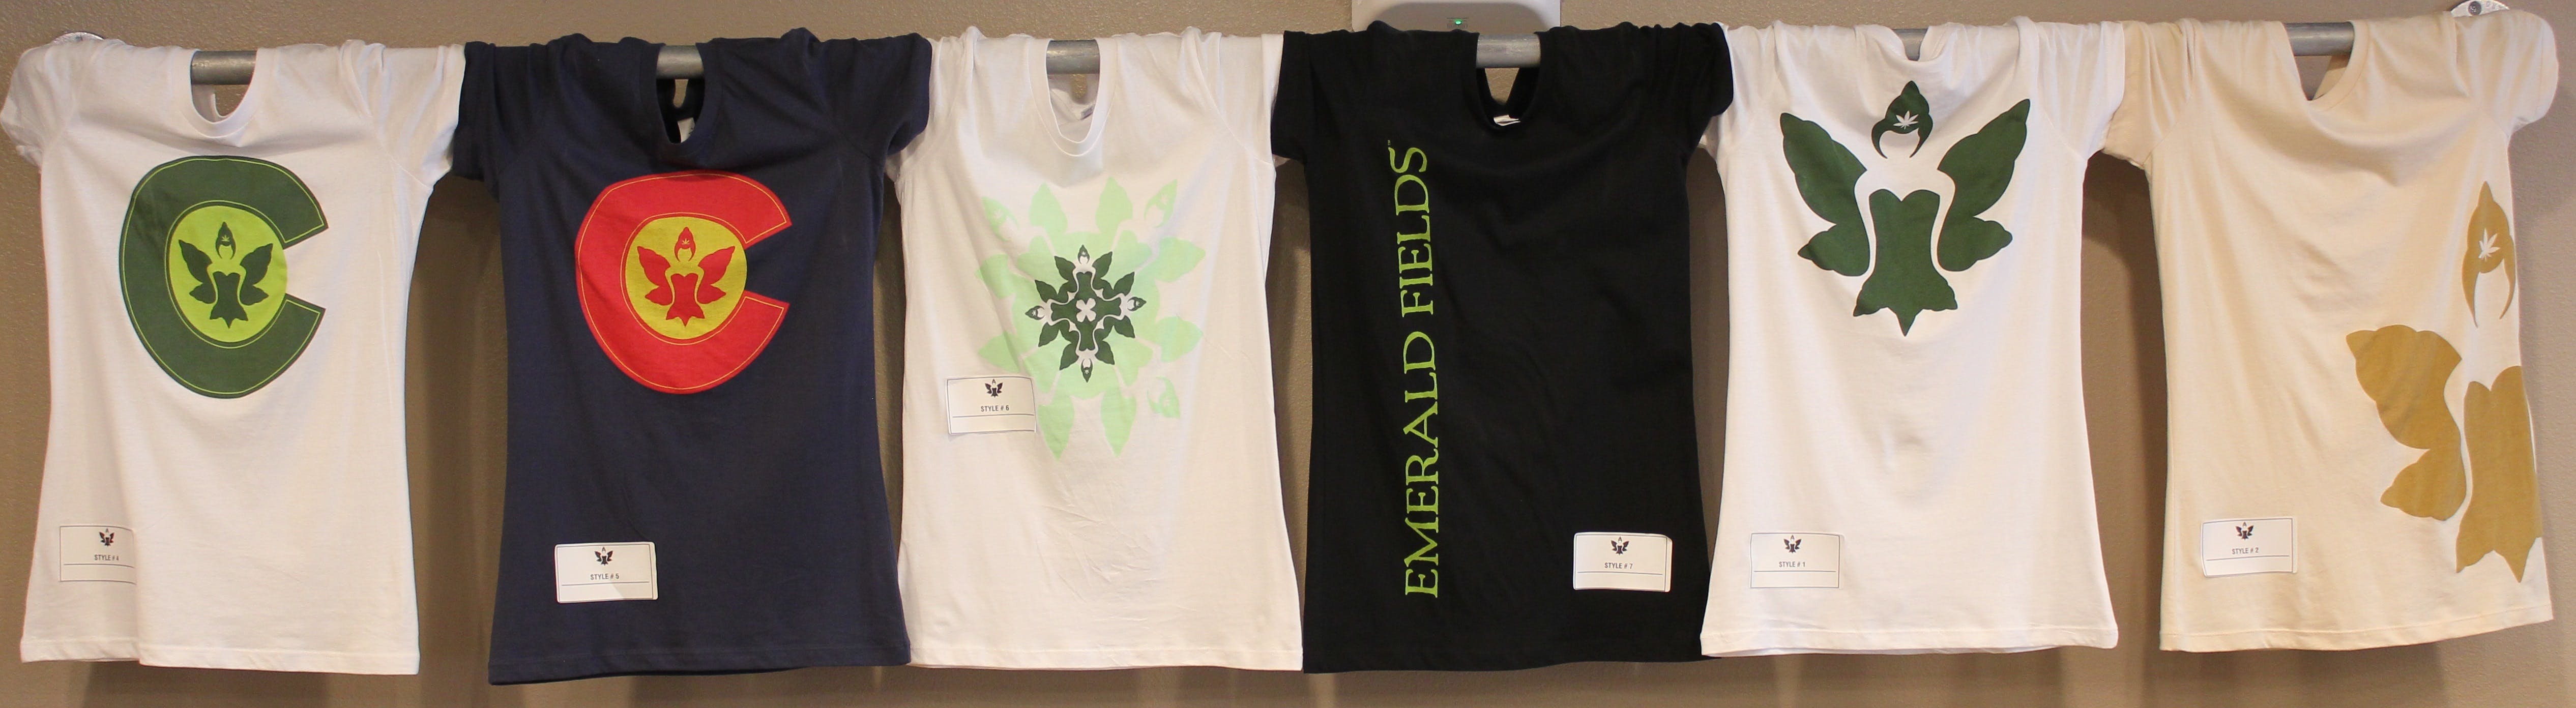 gear-emerald-fields-assorted-t-shirts